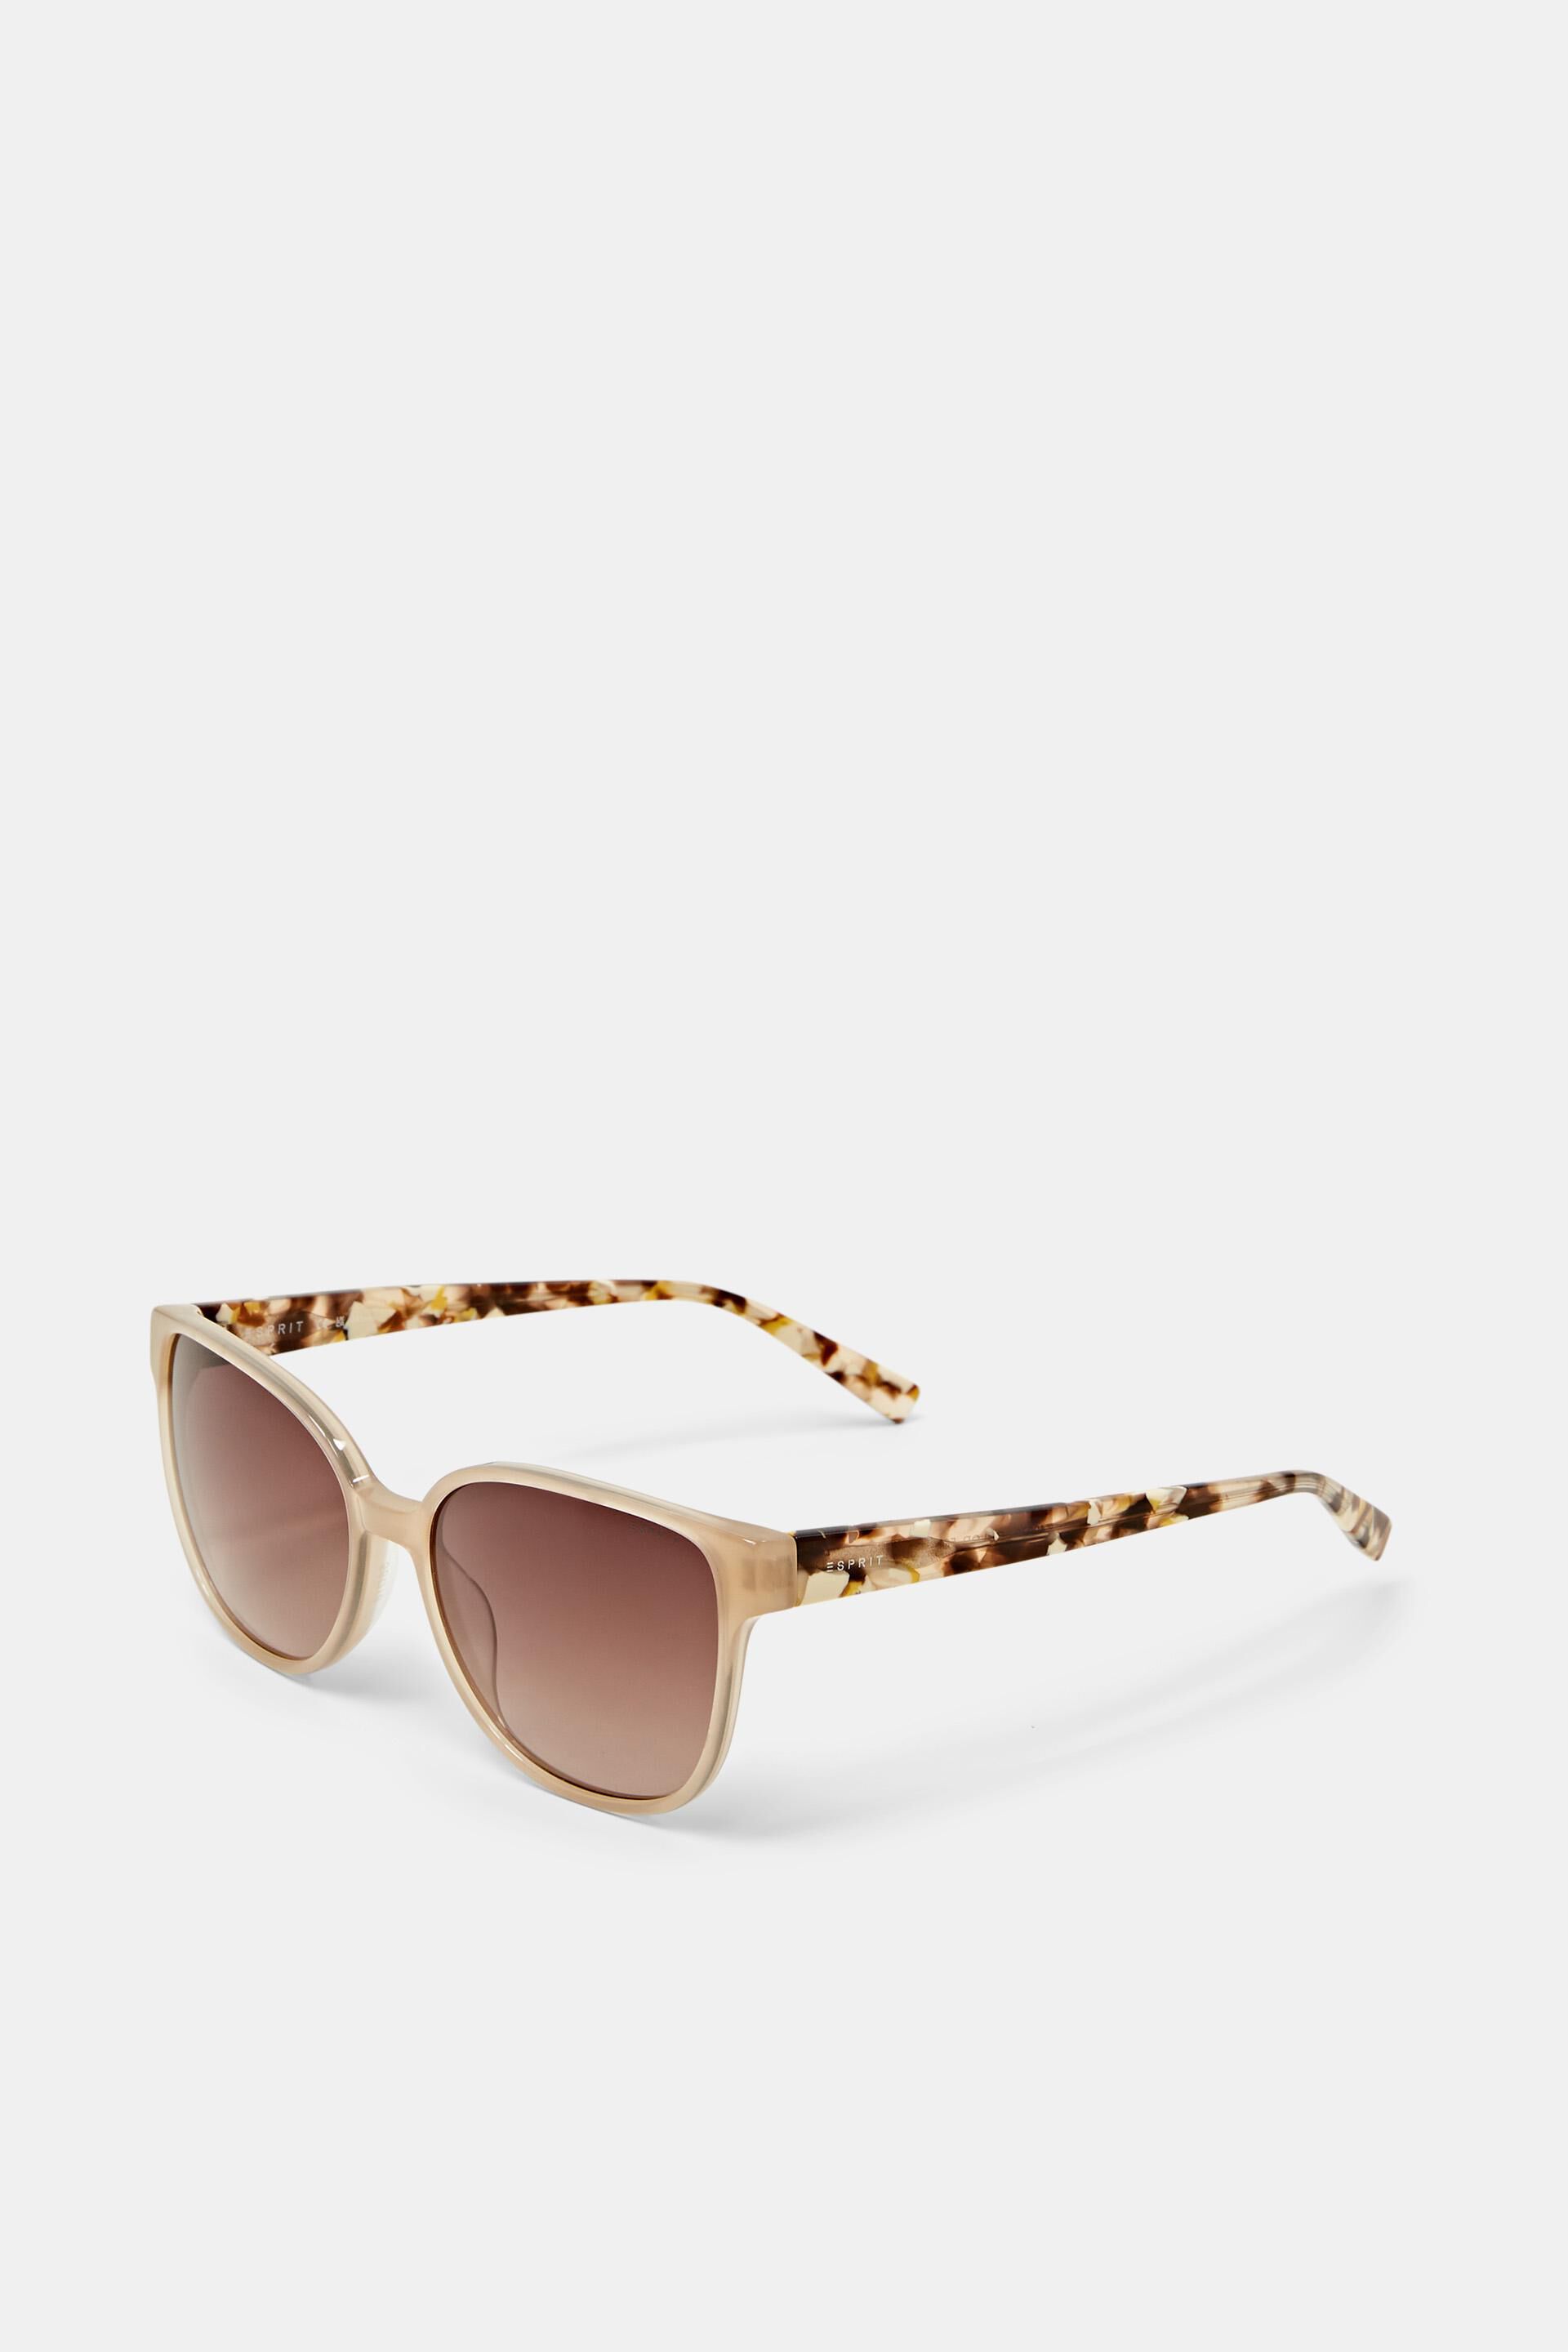 Esprit Online Store Sonnenbrille mit quadratischem Rahmen